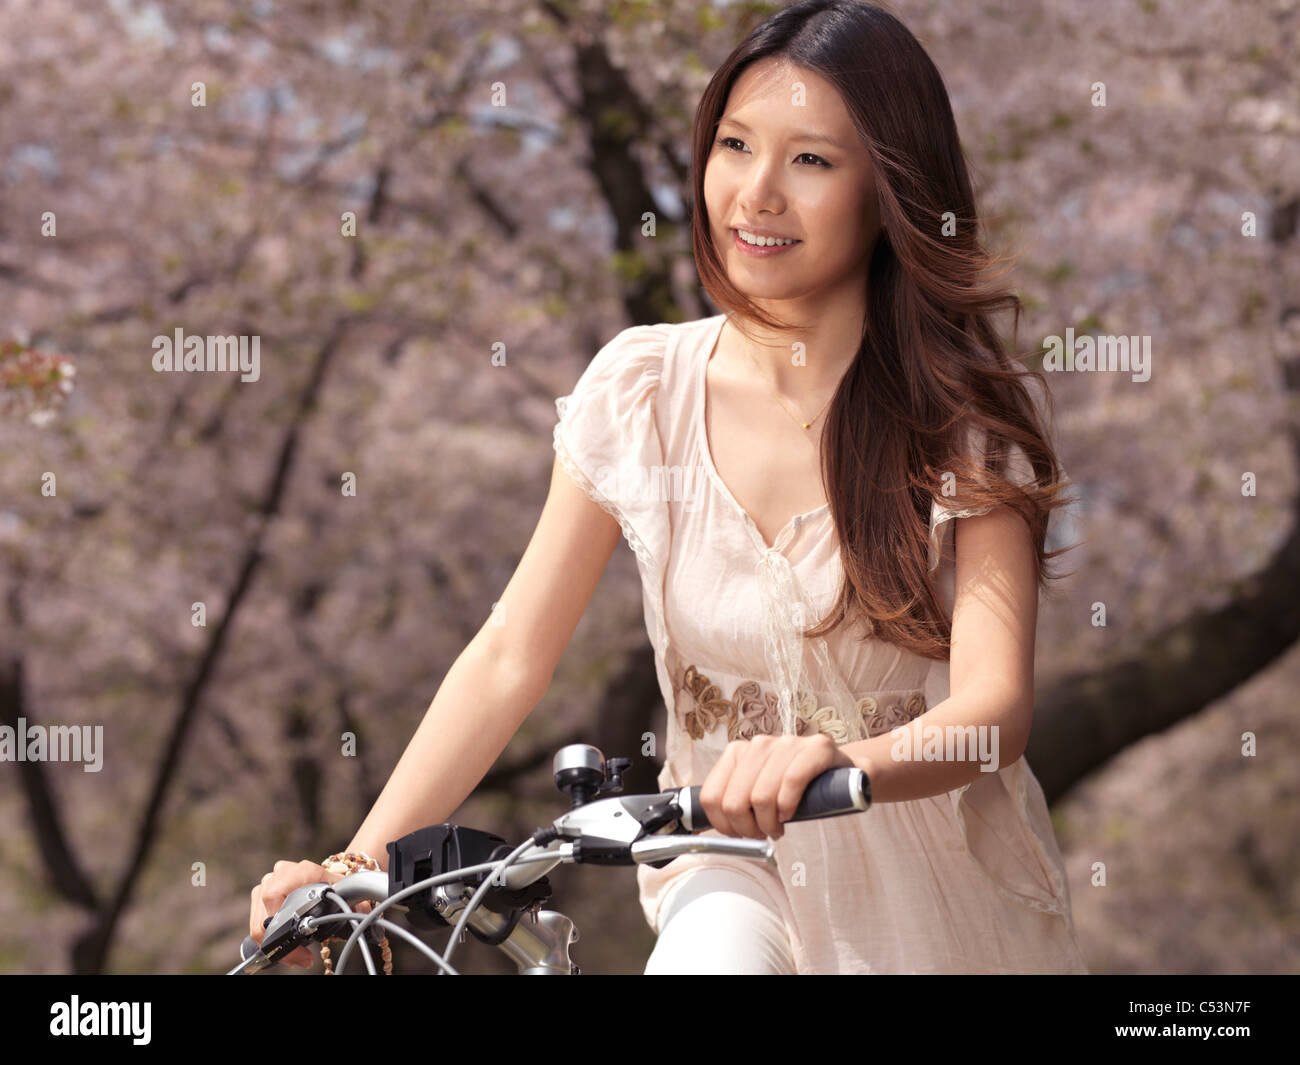 Patente disponibile all'indirizzo MaximImages.com - giovane donna asiatica sorridente in bicicletta in un parco passato dai ciliegi in fiore Foto Stock